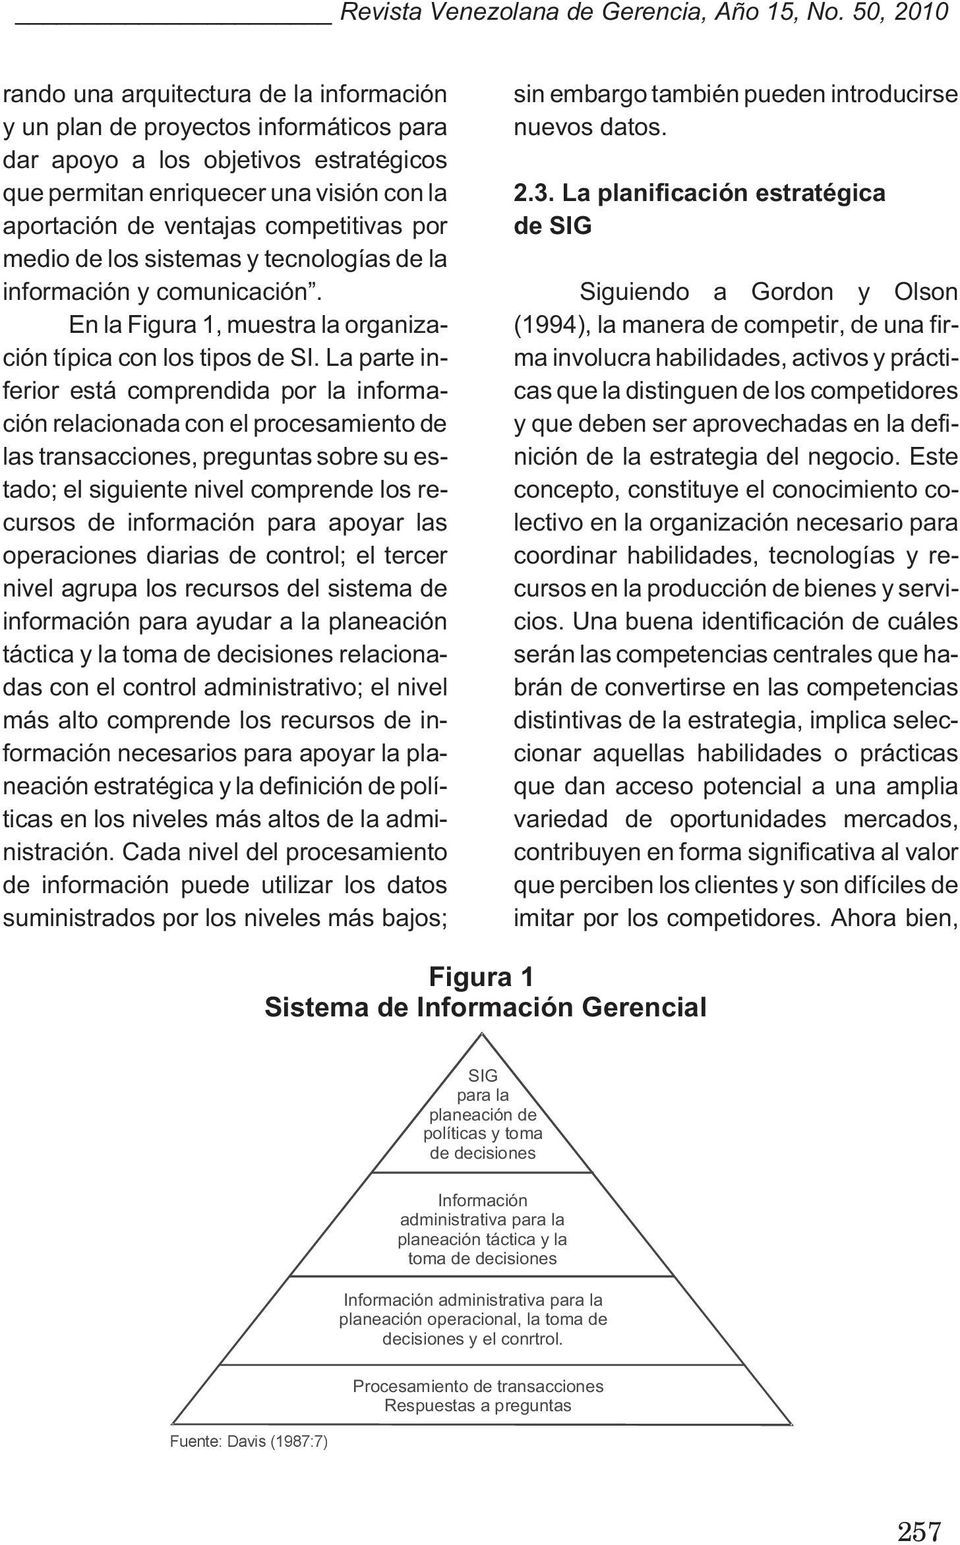 competitivas por medio de los sistemas y tecnologías de la información y comunicación. En la Figura 1, muestra la organización típica con los tipos de SI.